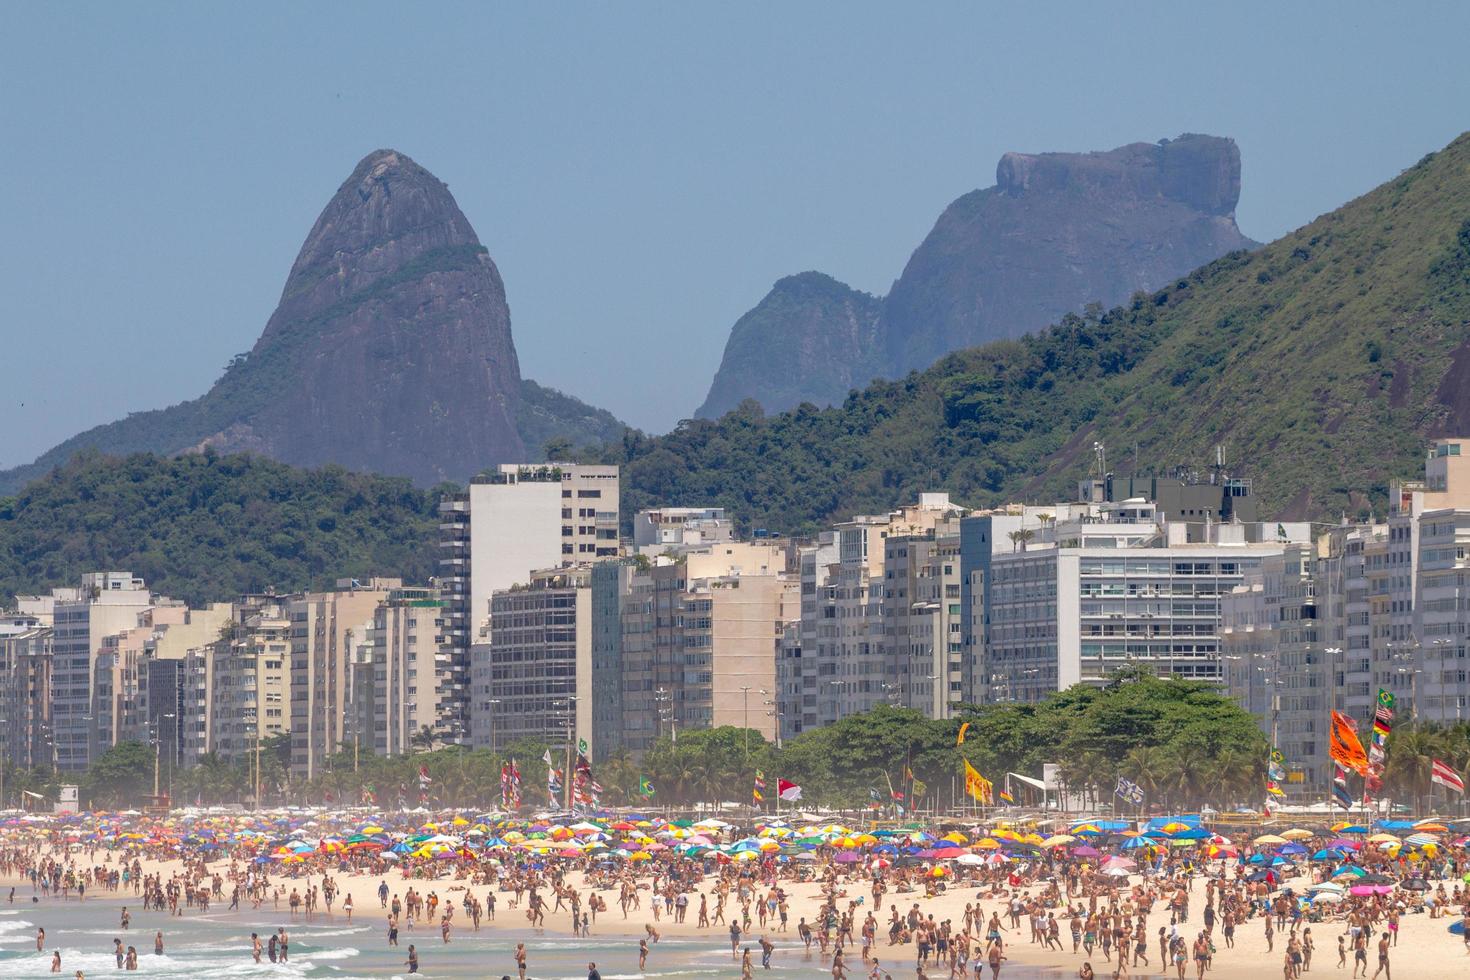 La spiaggia di copacabana si trova in una tipica giornata calda a rio de janeiro in brasile. foto